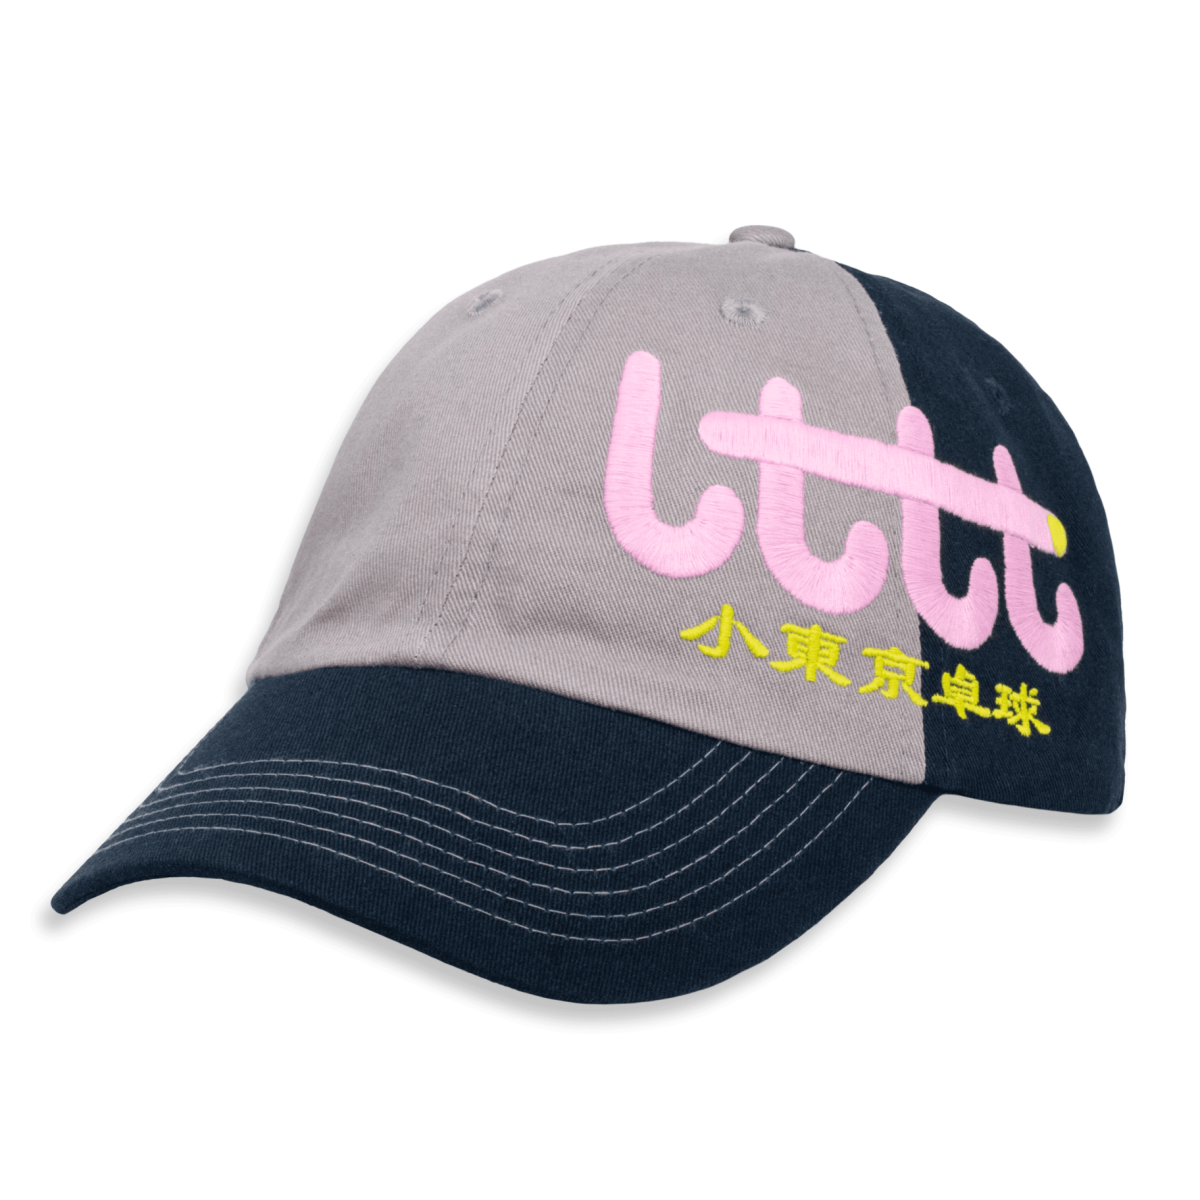  LTTT - candy logo cap